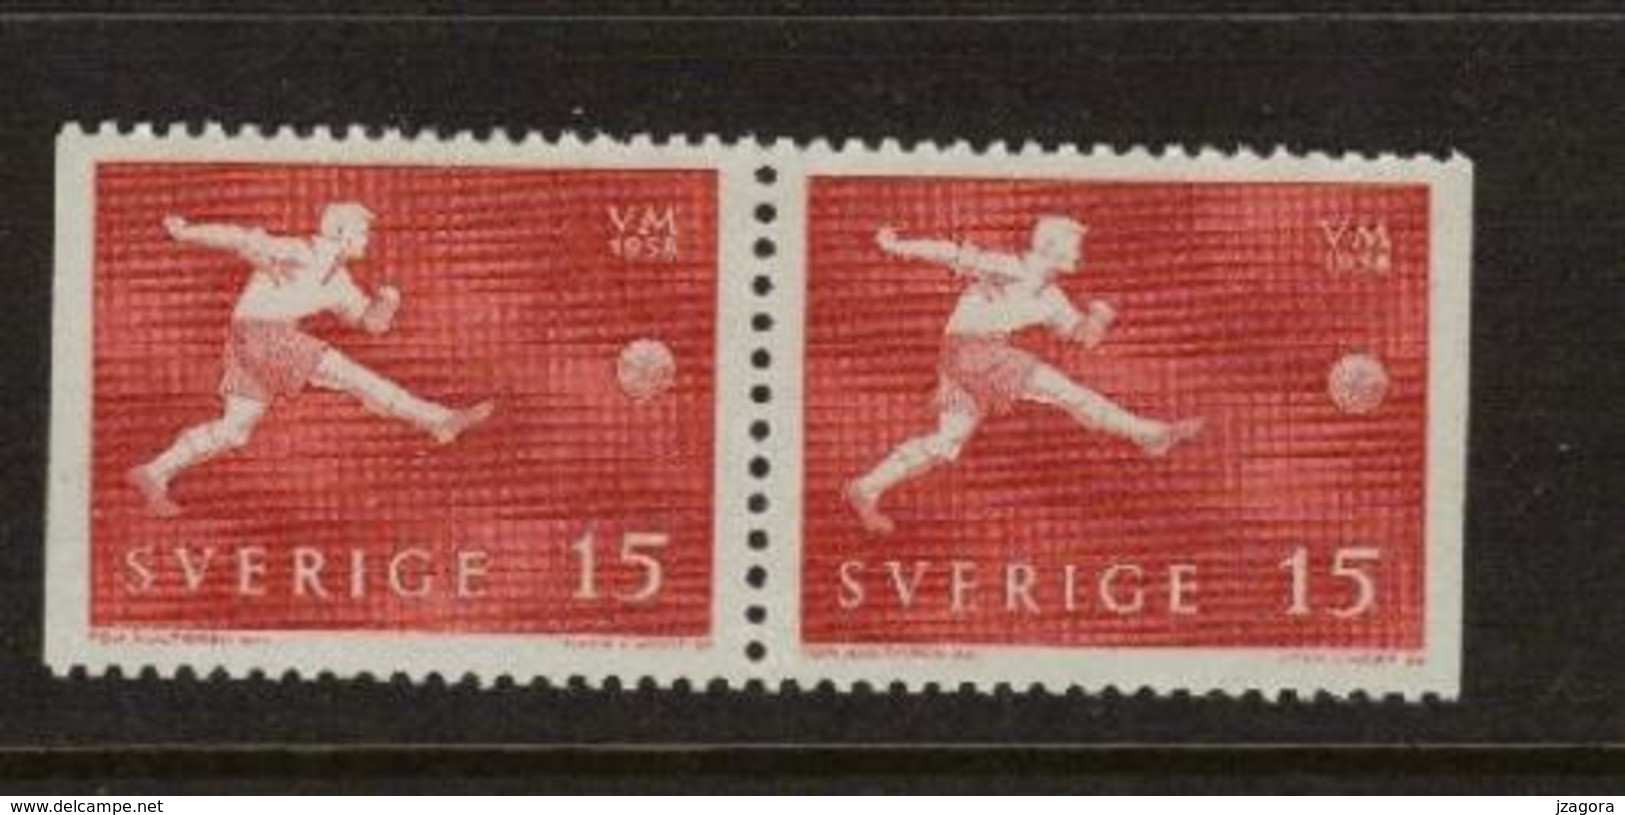 SOCCER FOOTBALL WORLD CHAMPIONSHIP - MUNDIAL 1958 - SWEDEN SCHWEDEN SUEDE MI 438 Dl\Dr MNH - 1958 – Sweden